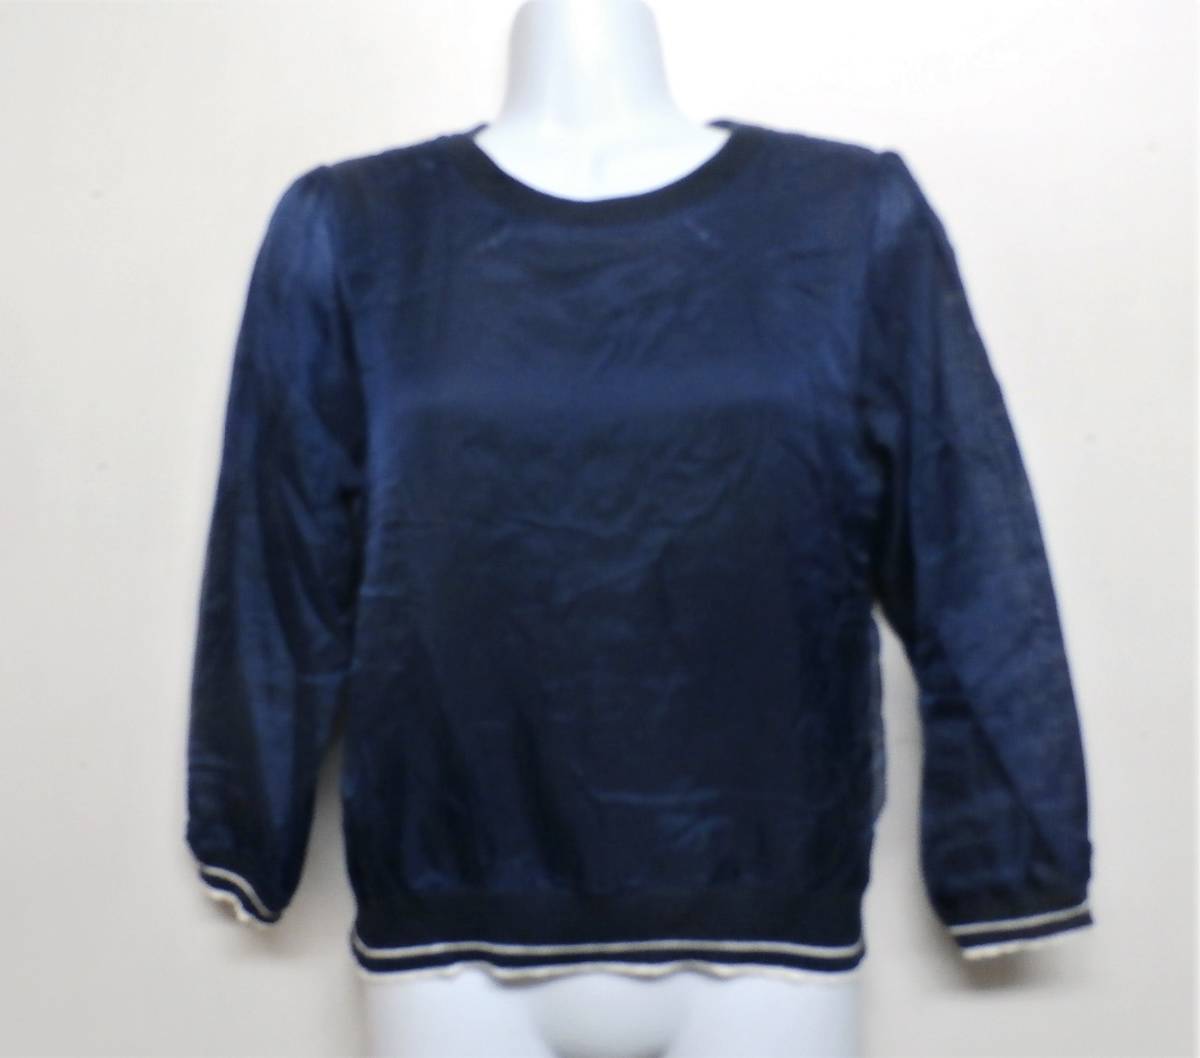 [17566] feroux / размер 2 / модный / темно-синий цвет tops 